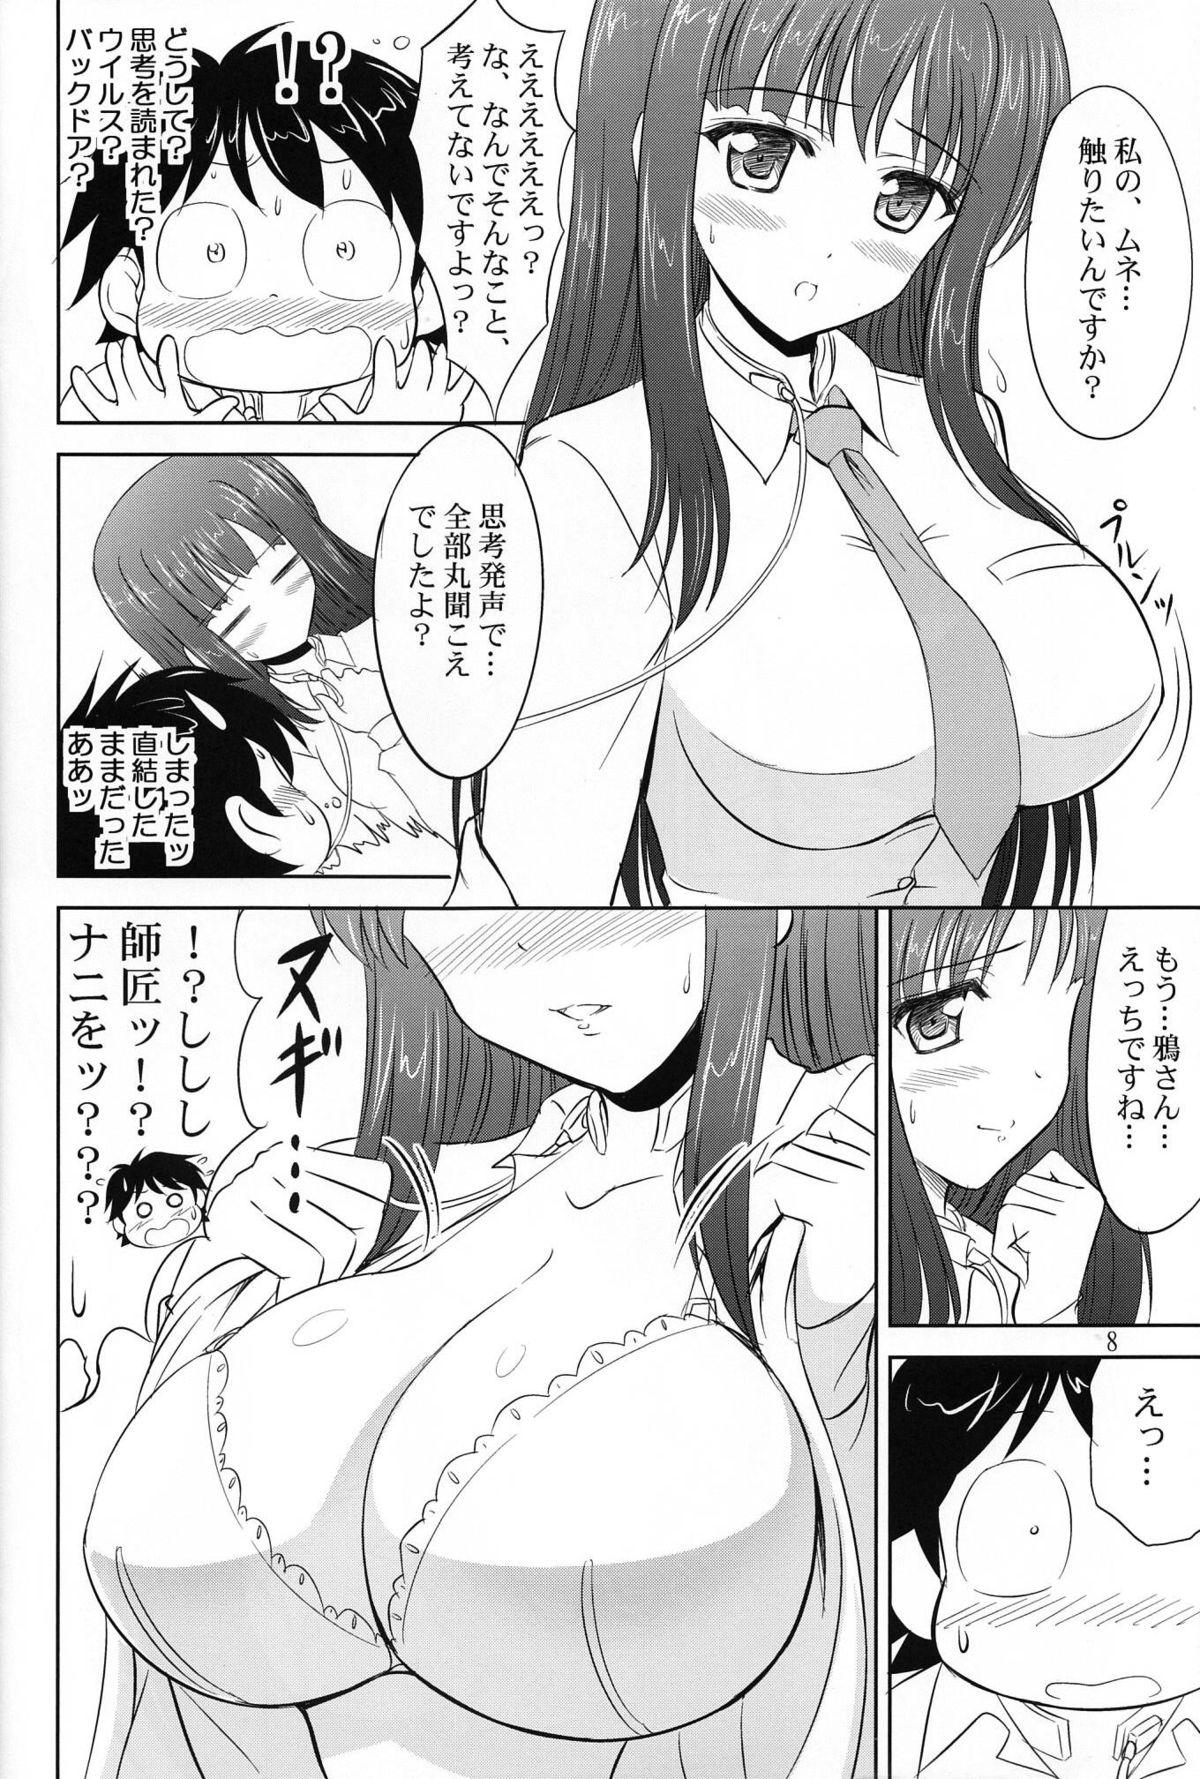 Girlfriends Tokkun desu yo, Raker-san. - Accel world Girlfriend - Page 7